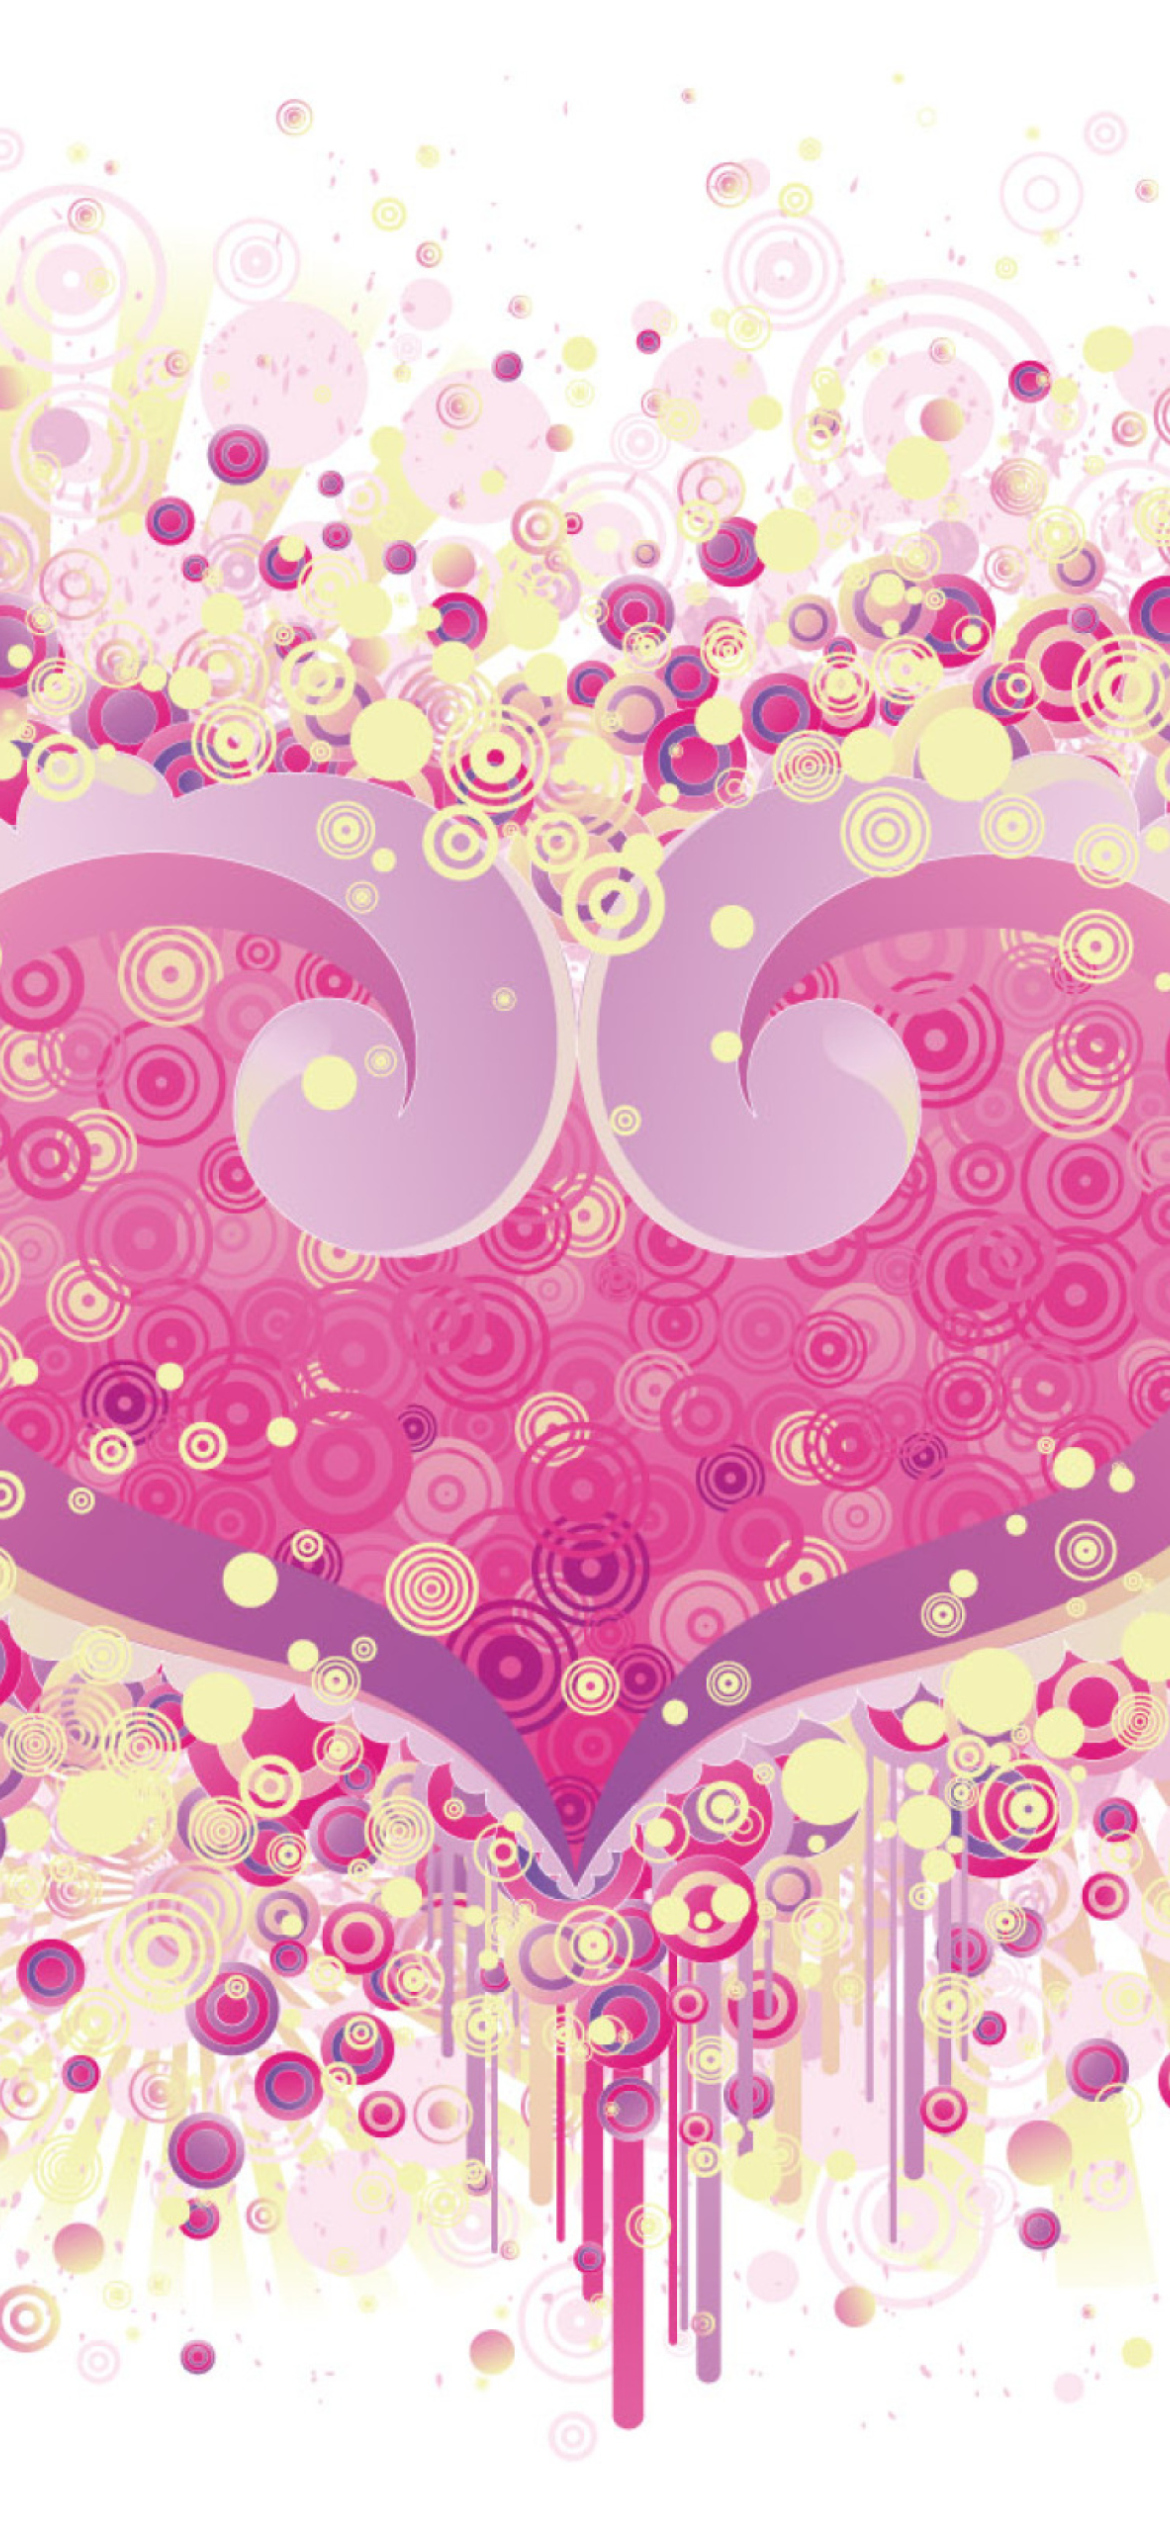 Das Valentine's Day Heart Wallpaper 1170x2532